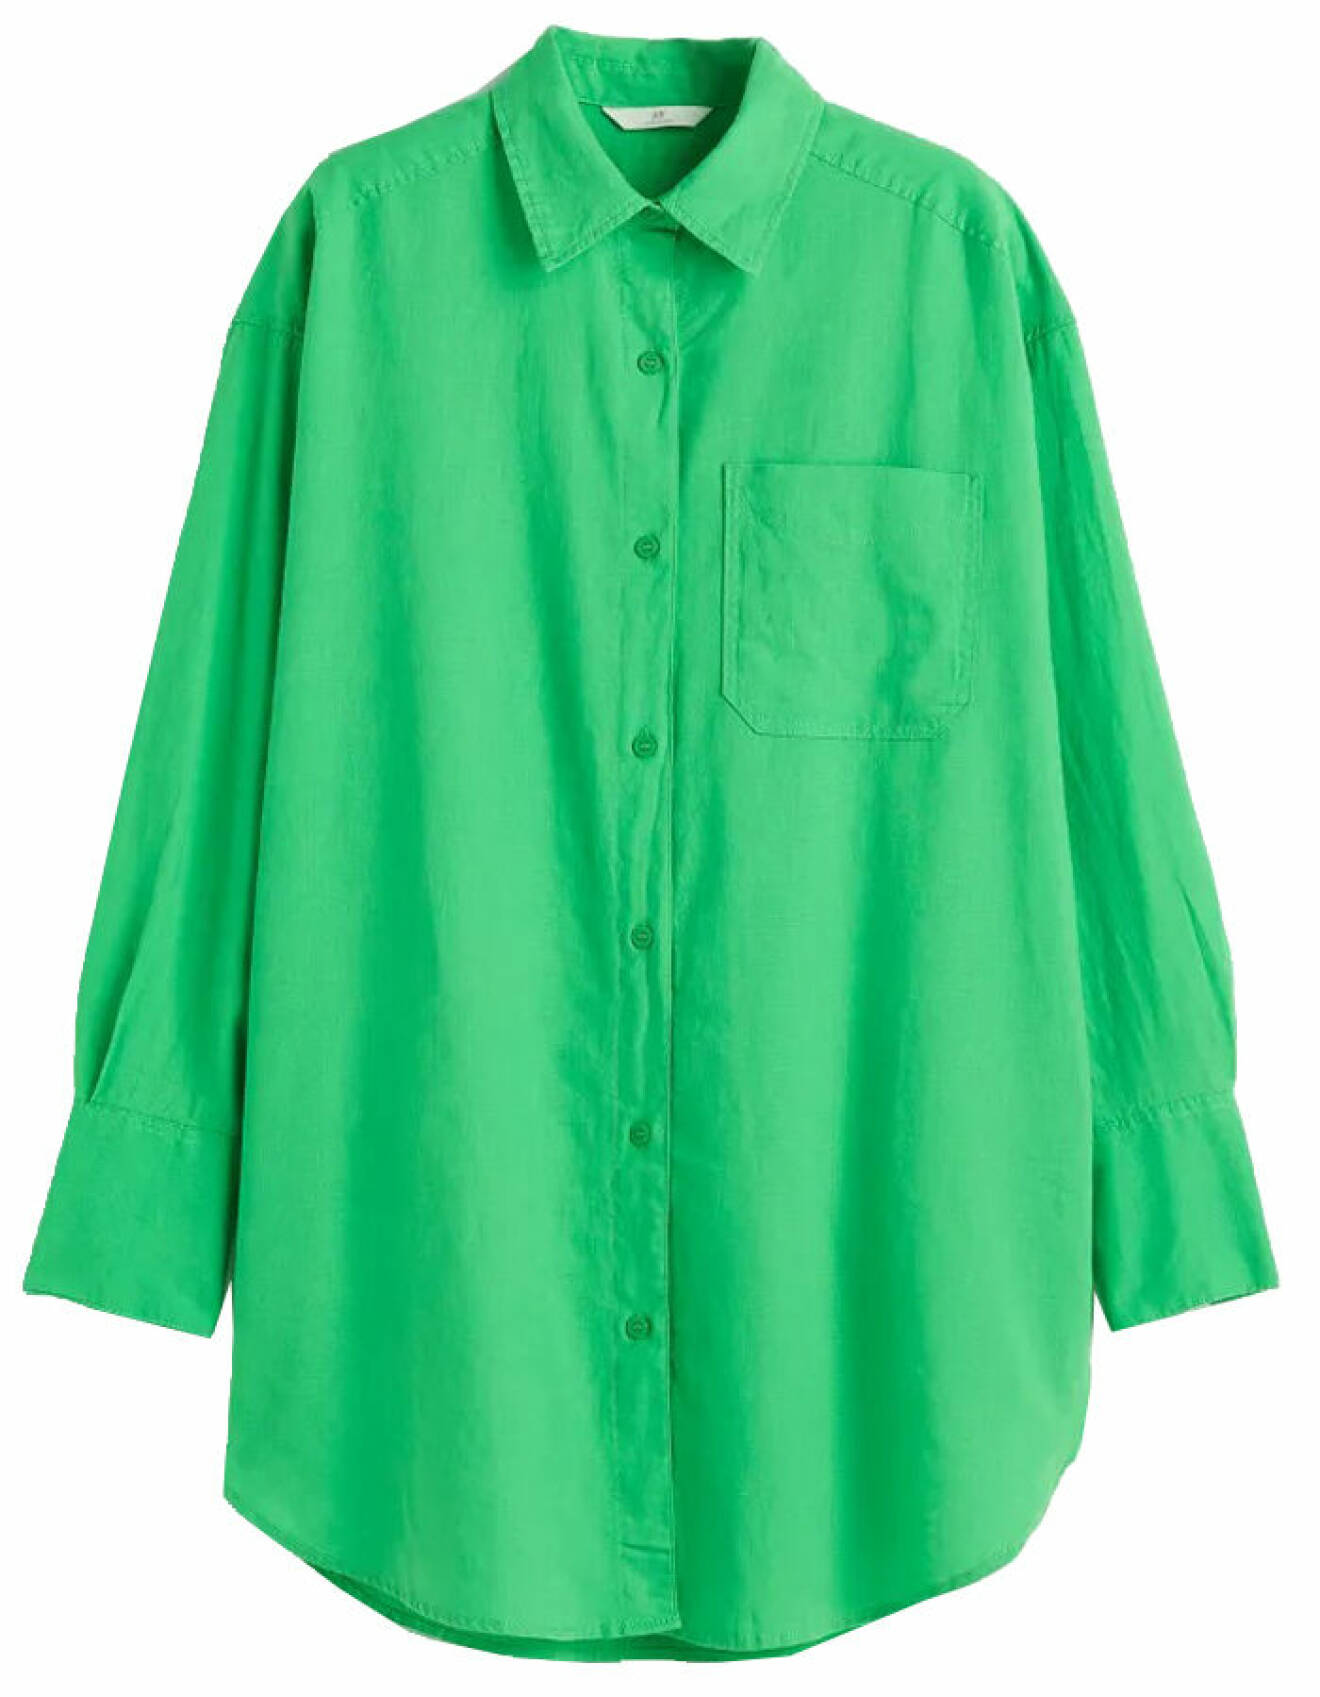 modenyheter dam till jobb och fest - grön oversize skjorta från H&amp;M